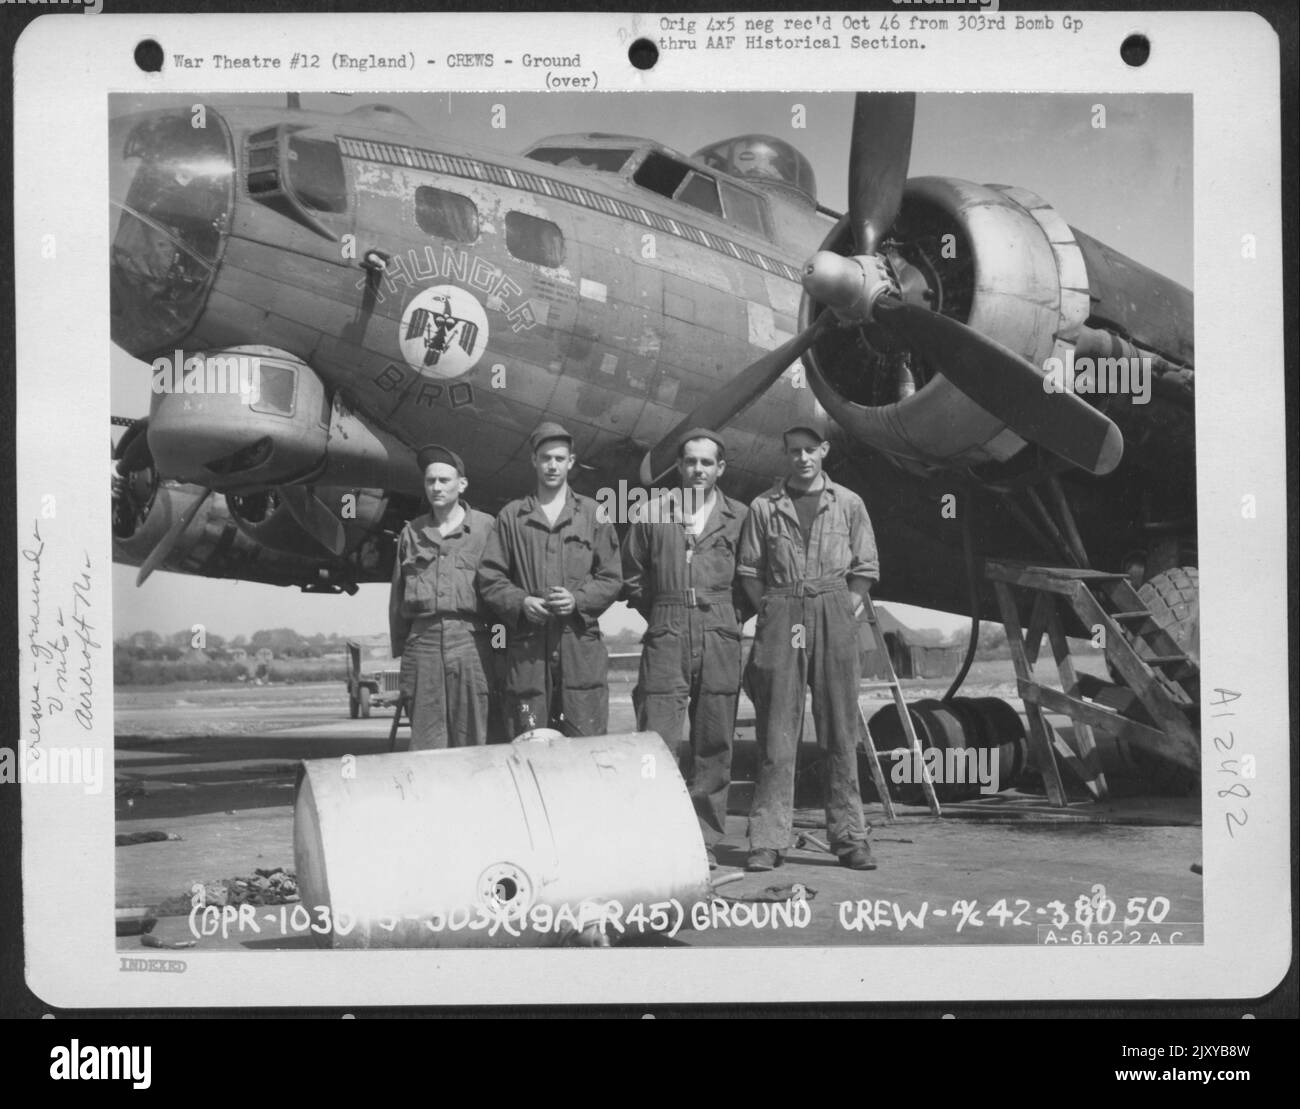 Die Bodenbesatzung der 359Th Bomb Squadron, 303. Bomb Group, posiert neben Einer Boeing B-17 Flying Fortress. England, 19. April 1945. Flugzeug Nr. 43-30850. Stockfoto